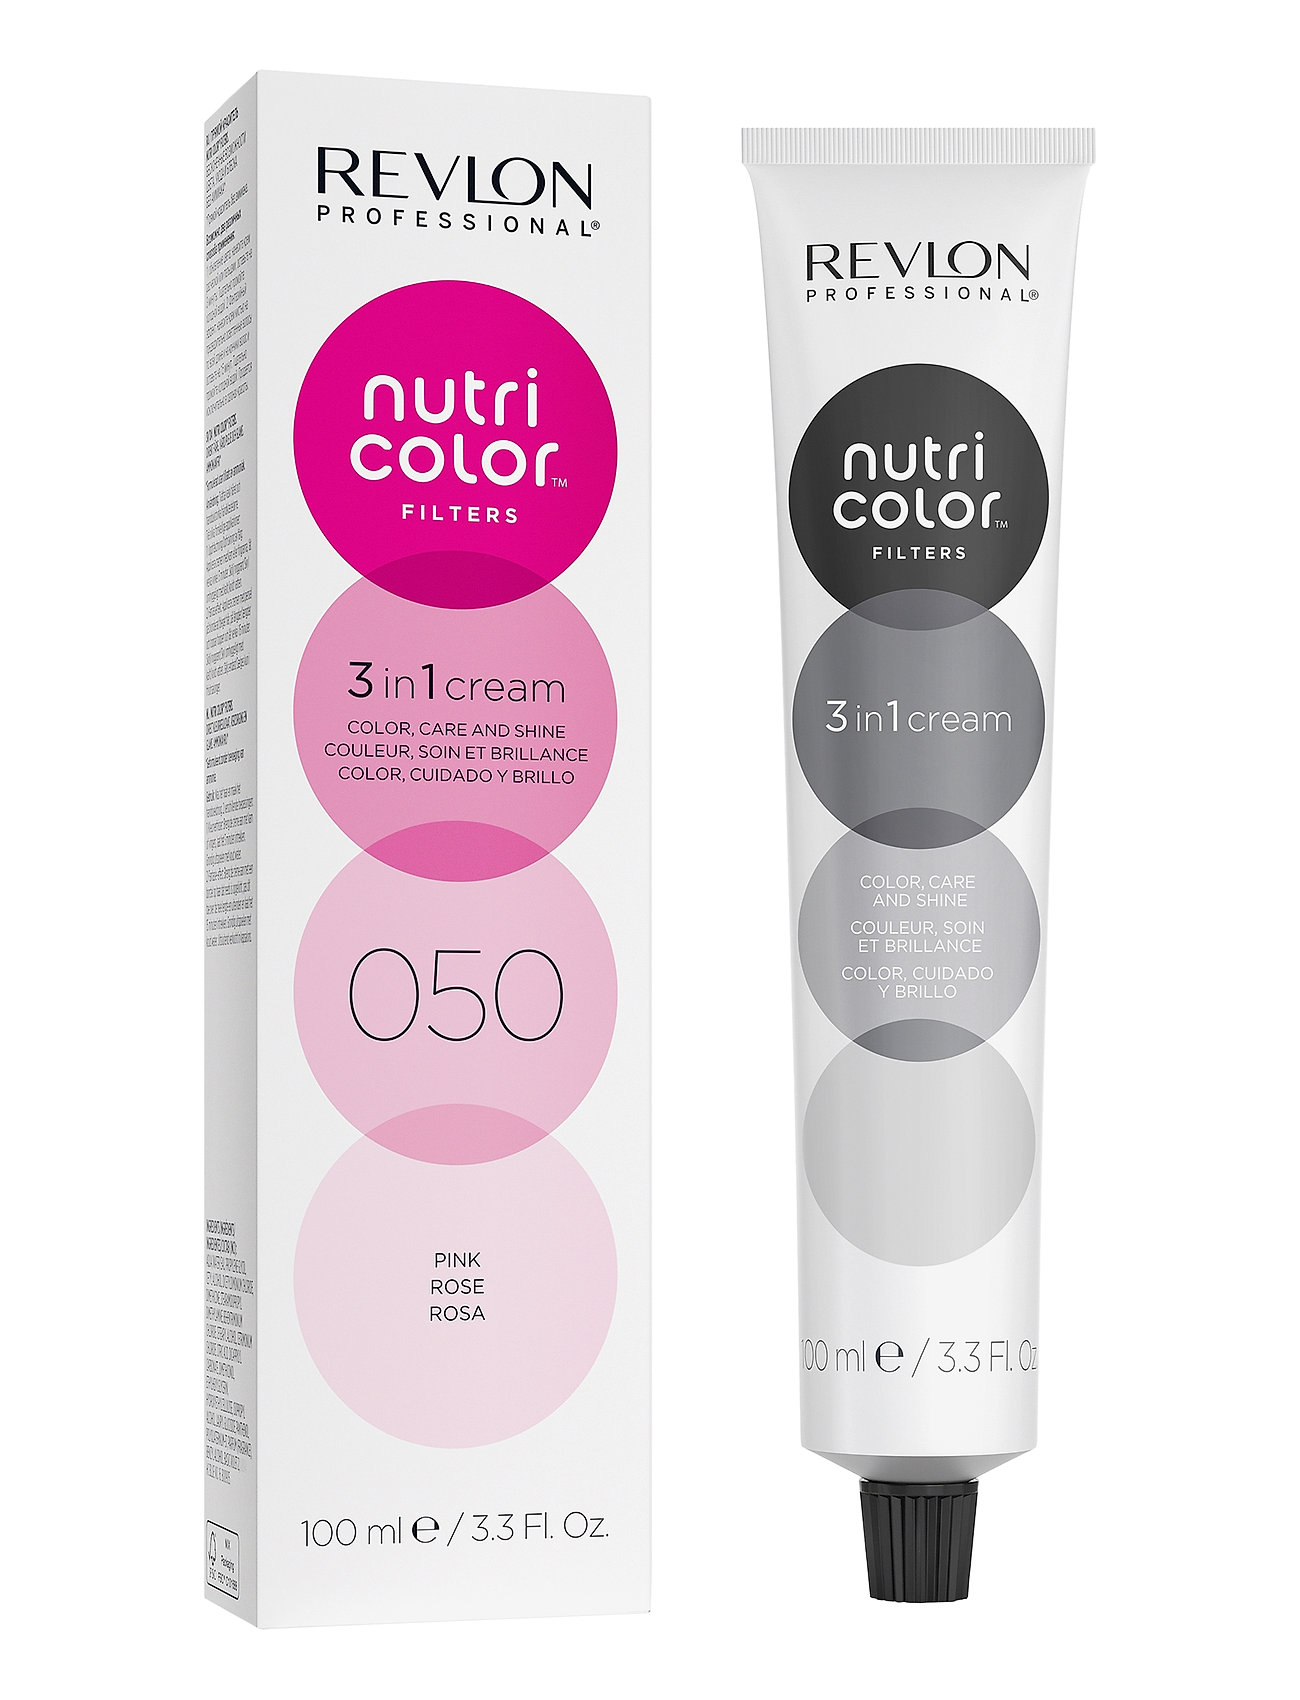 "Revlon Professional" "Nutri Color Filters 050 Beauty Women Hair Care Treatments Nude Revlon